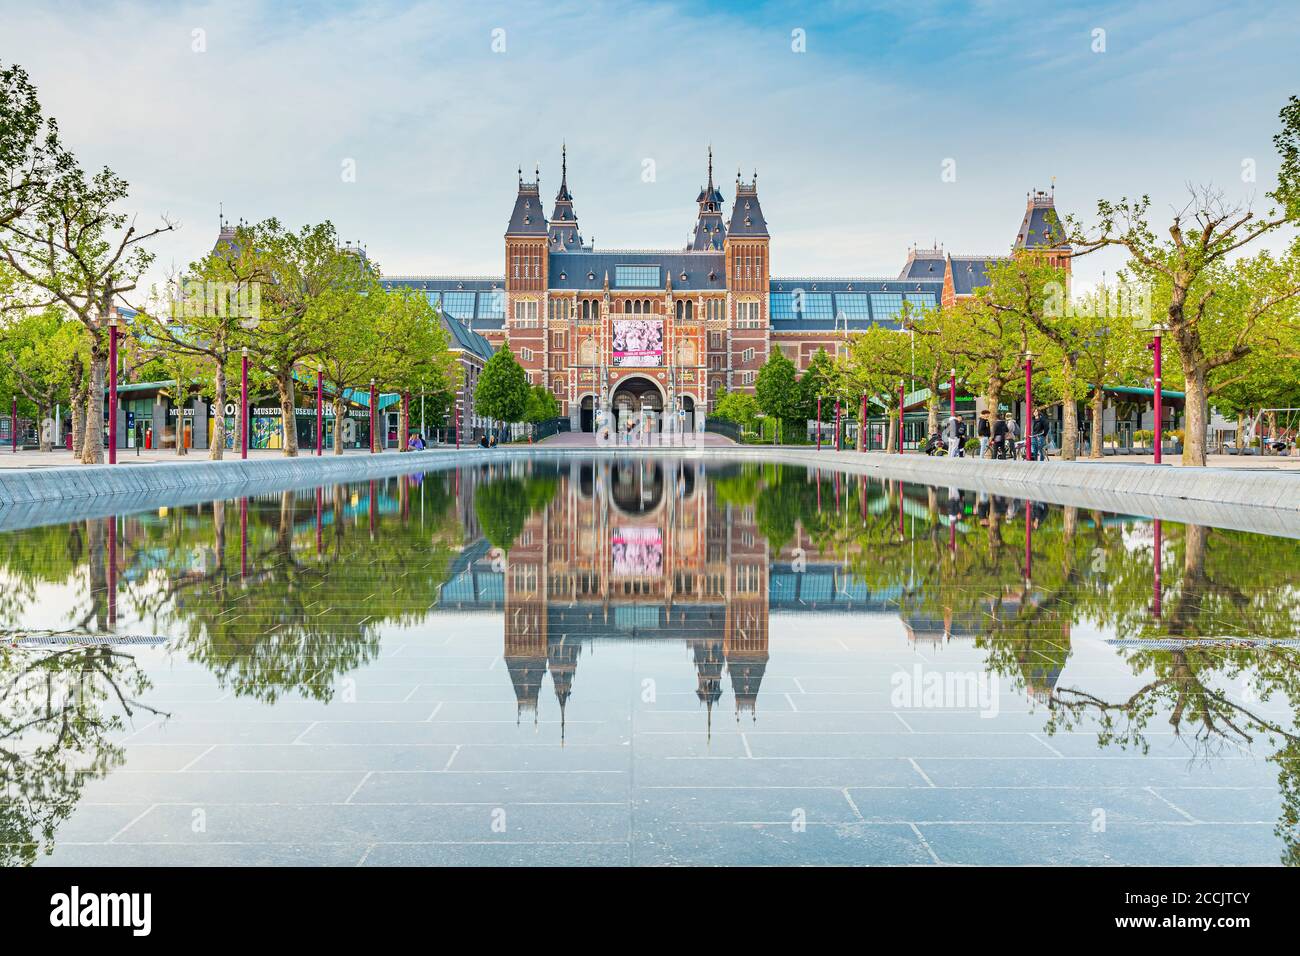 07 maggio 2020, Amsterdam, Paesi Bassi - il Rijksmuseum è un famoso punto di riferimento turistico ma è chiuso a causa di misure di virus corona. Gamma dinamica elevata HDR im Foto Stock